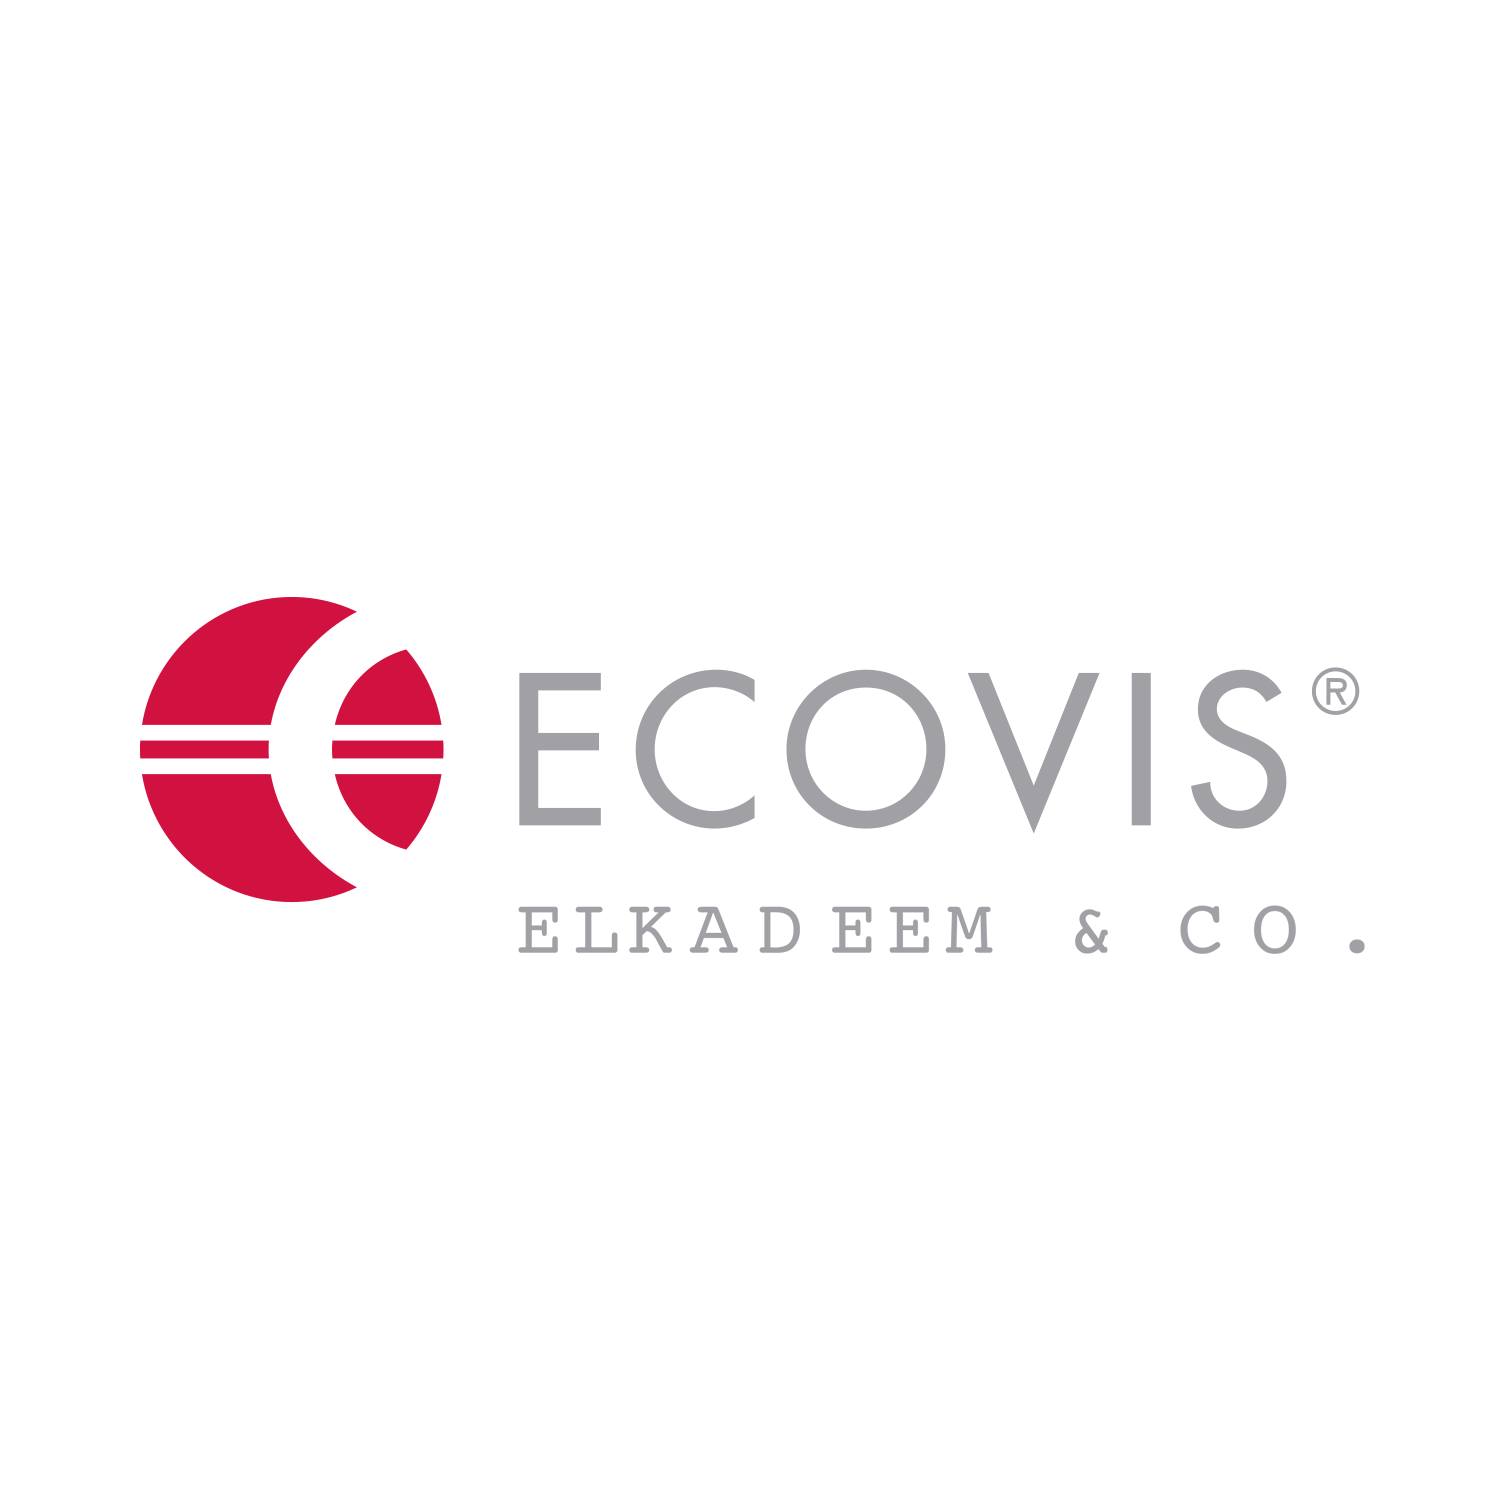 Ecovis ElKadeem & CO.